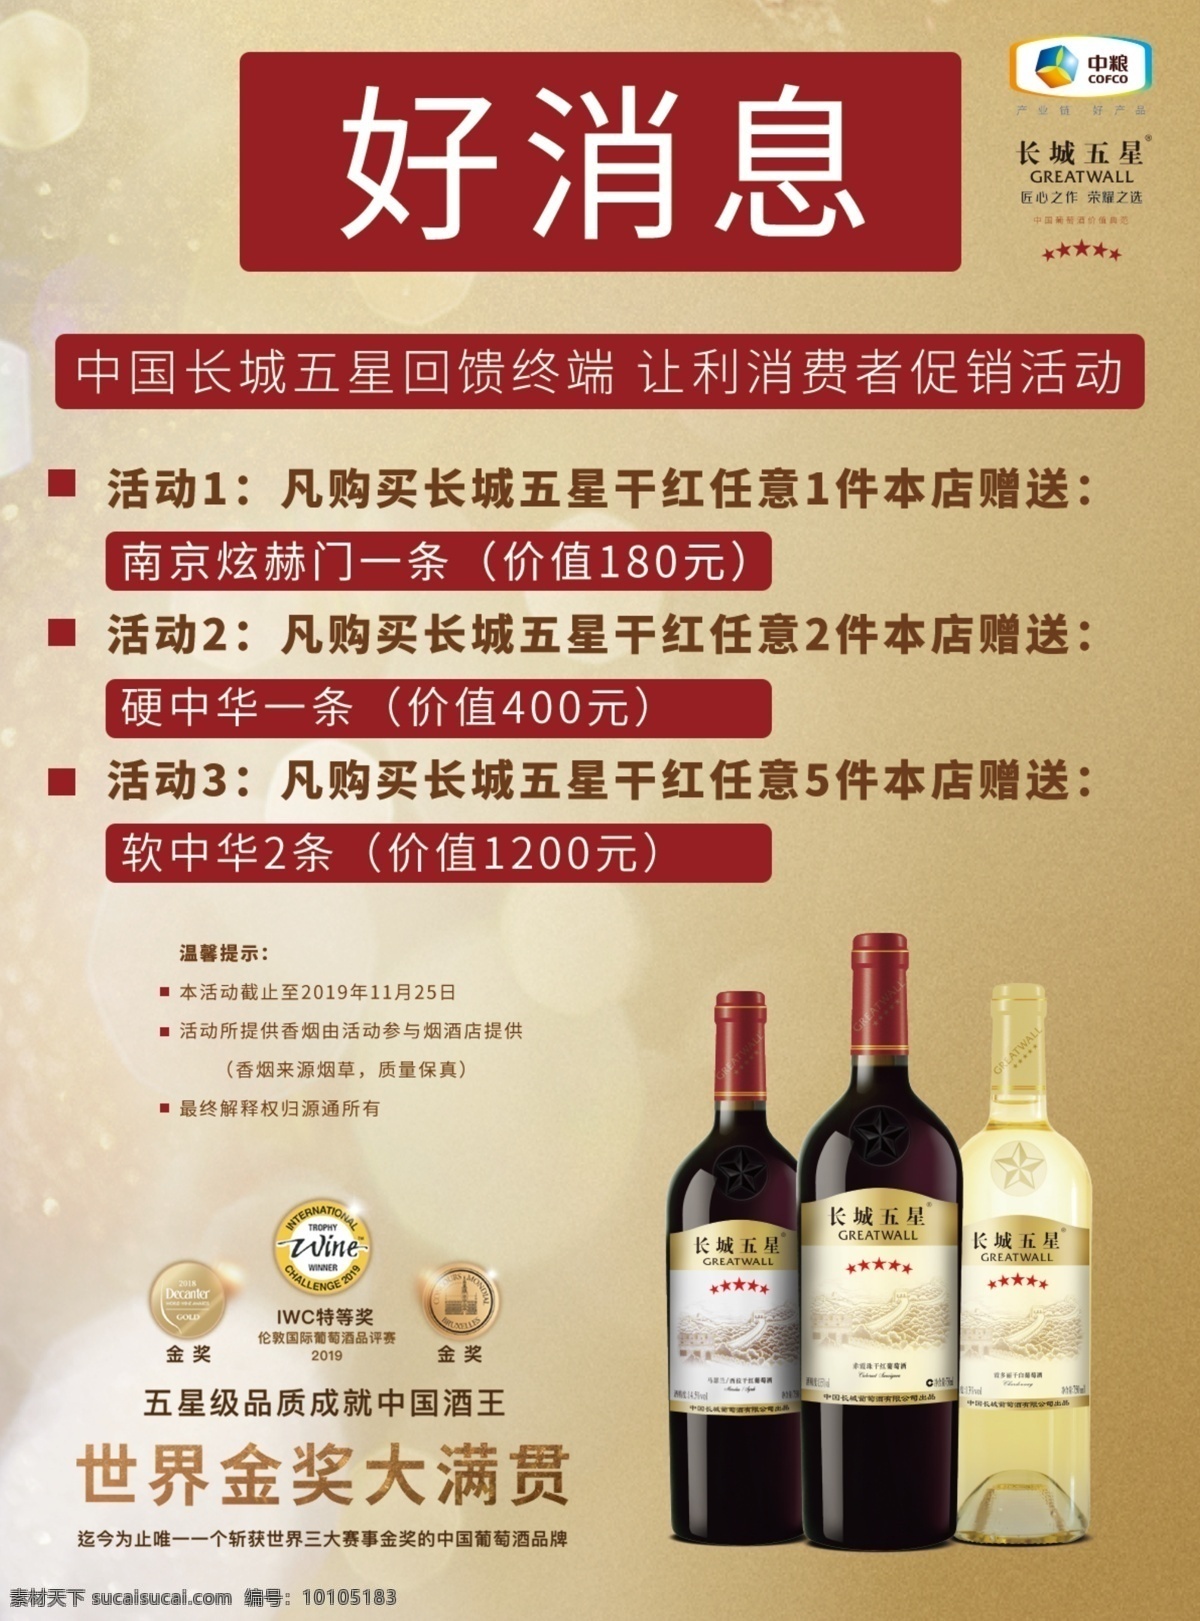 中粮 长城五星 中国葡萄酒 白葡萄酒 指定产品